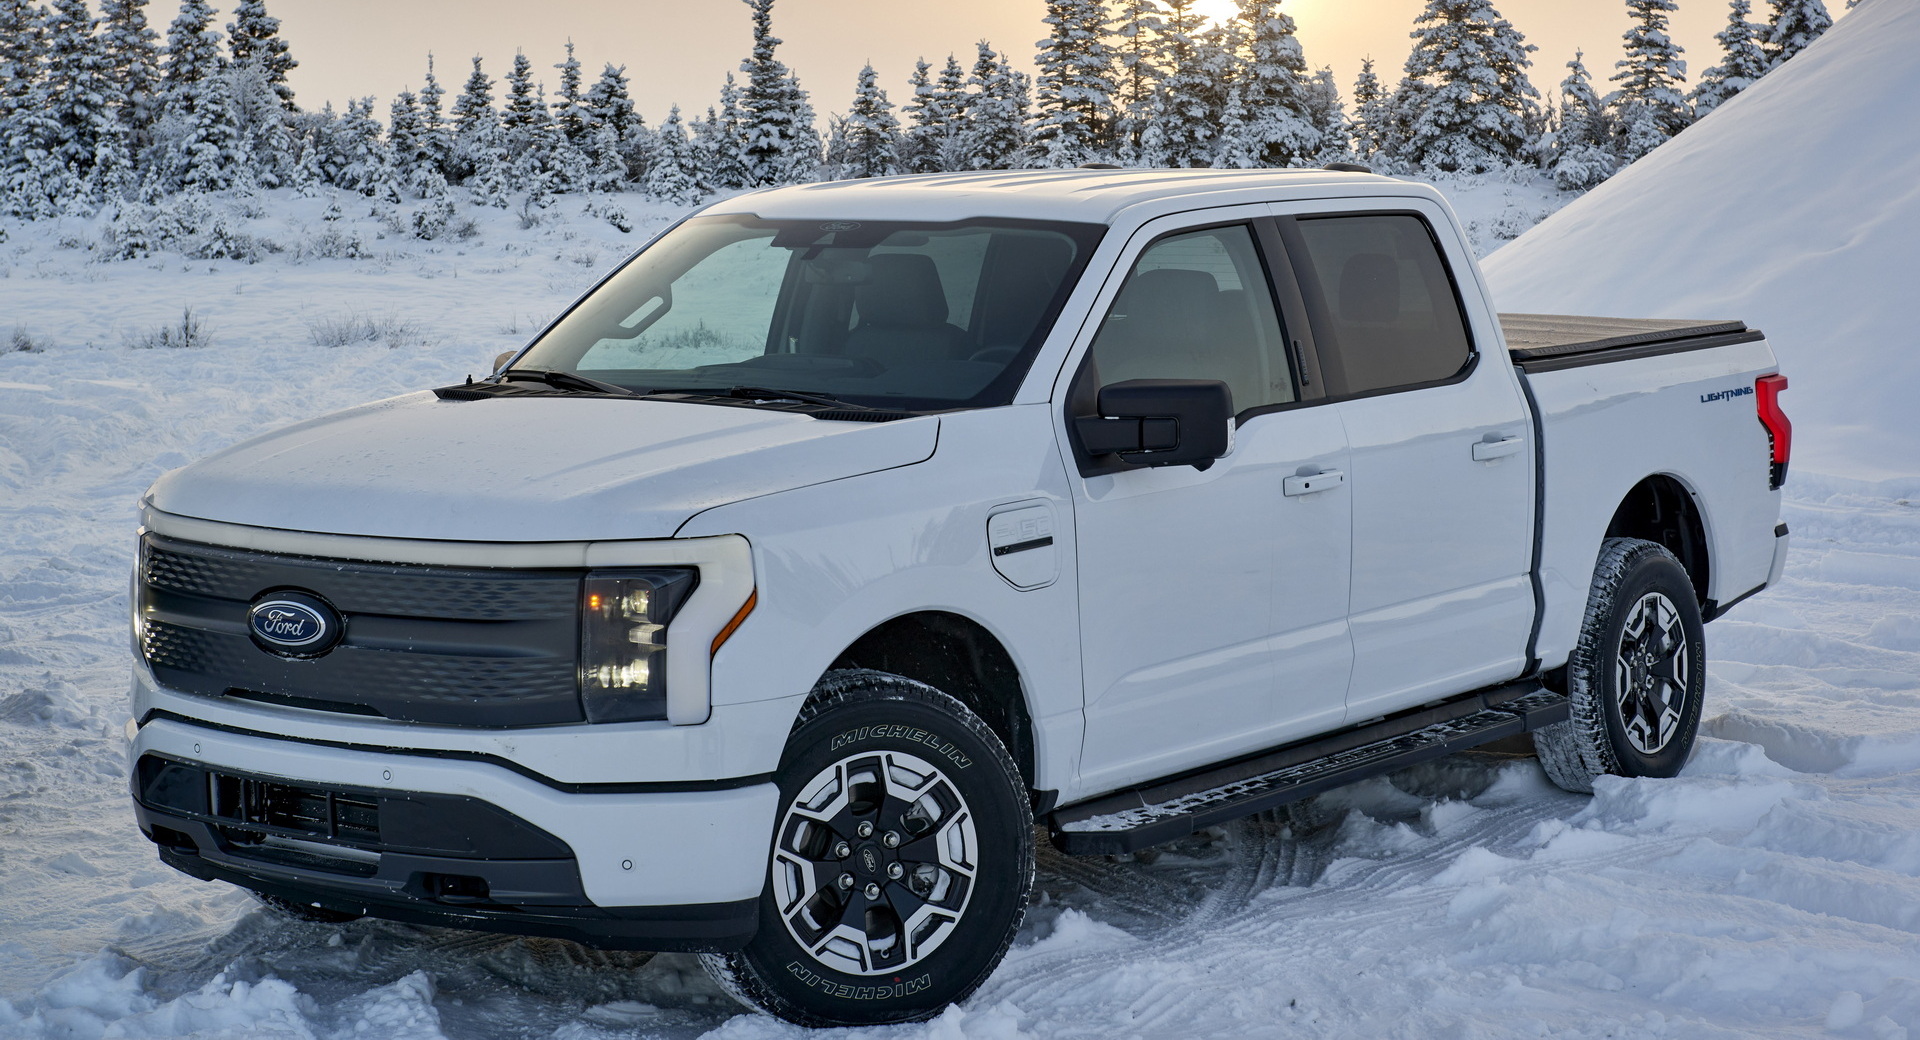 Ford nous explique comment maximiser l’autonomie de votre voiture électrique en hiver